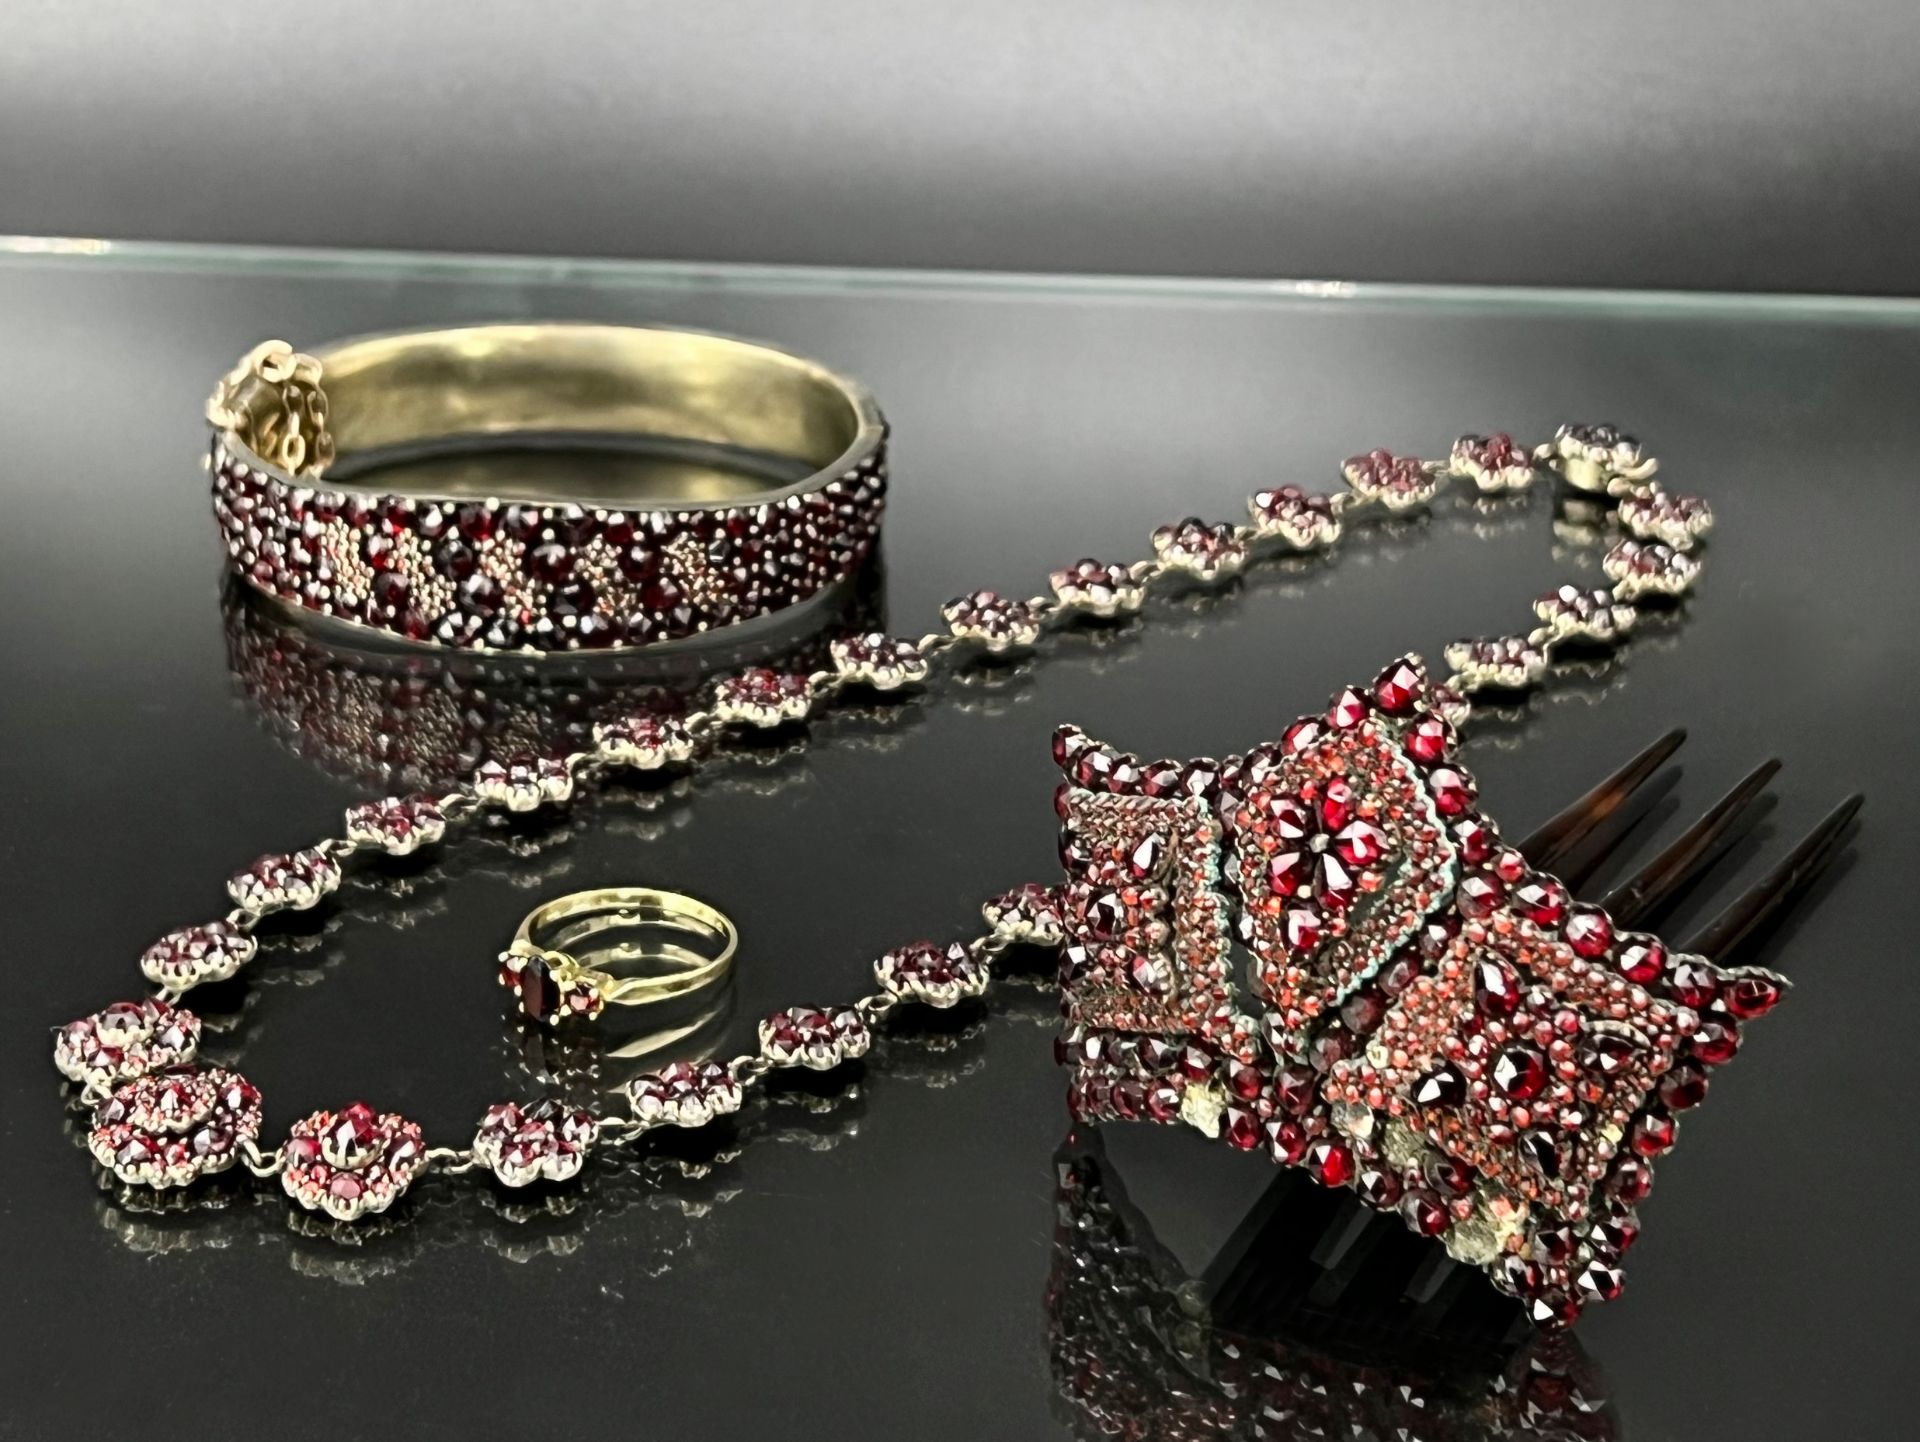 4-piece jewellery set with garnets.